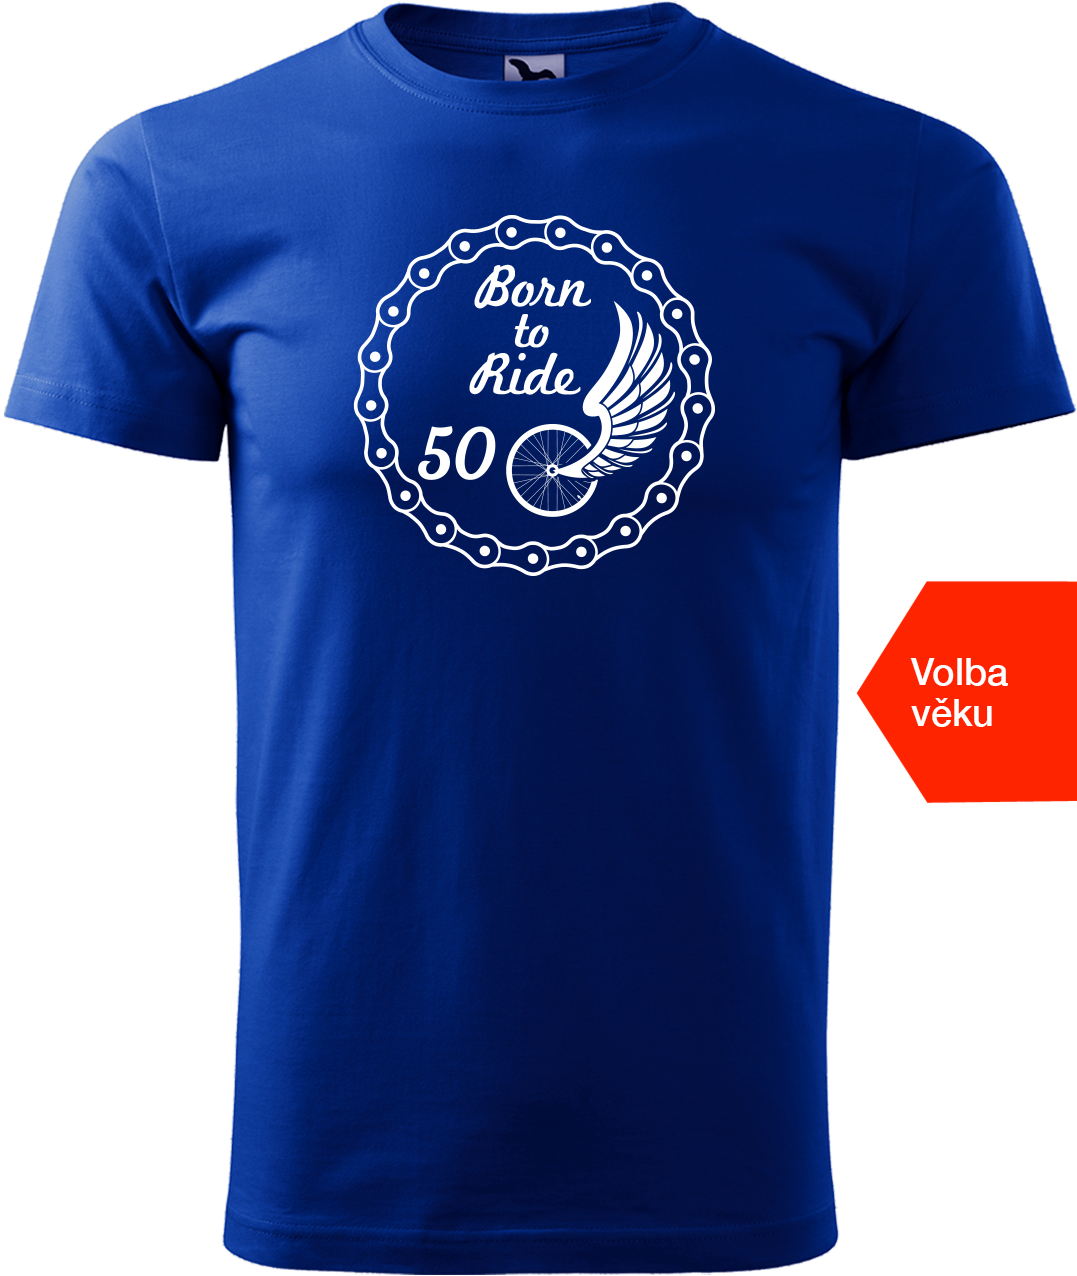 Pánské tričko pro cyklistu s věkem - Born to Ride (wings) Velikost: S, Barva: Královská modrá (05)